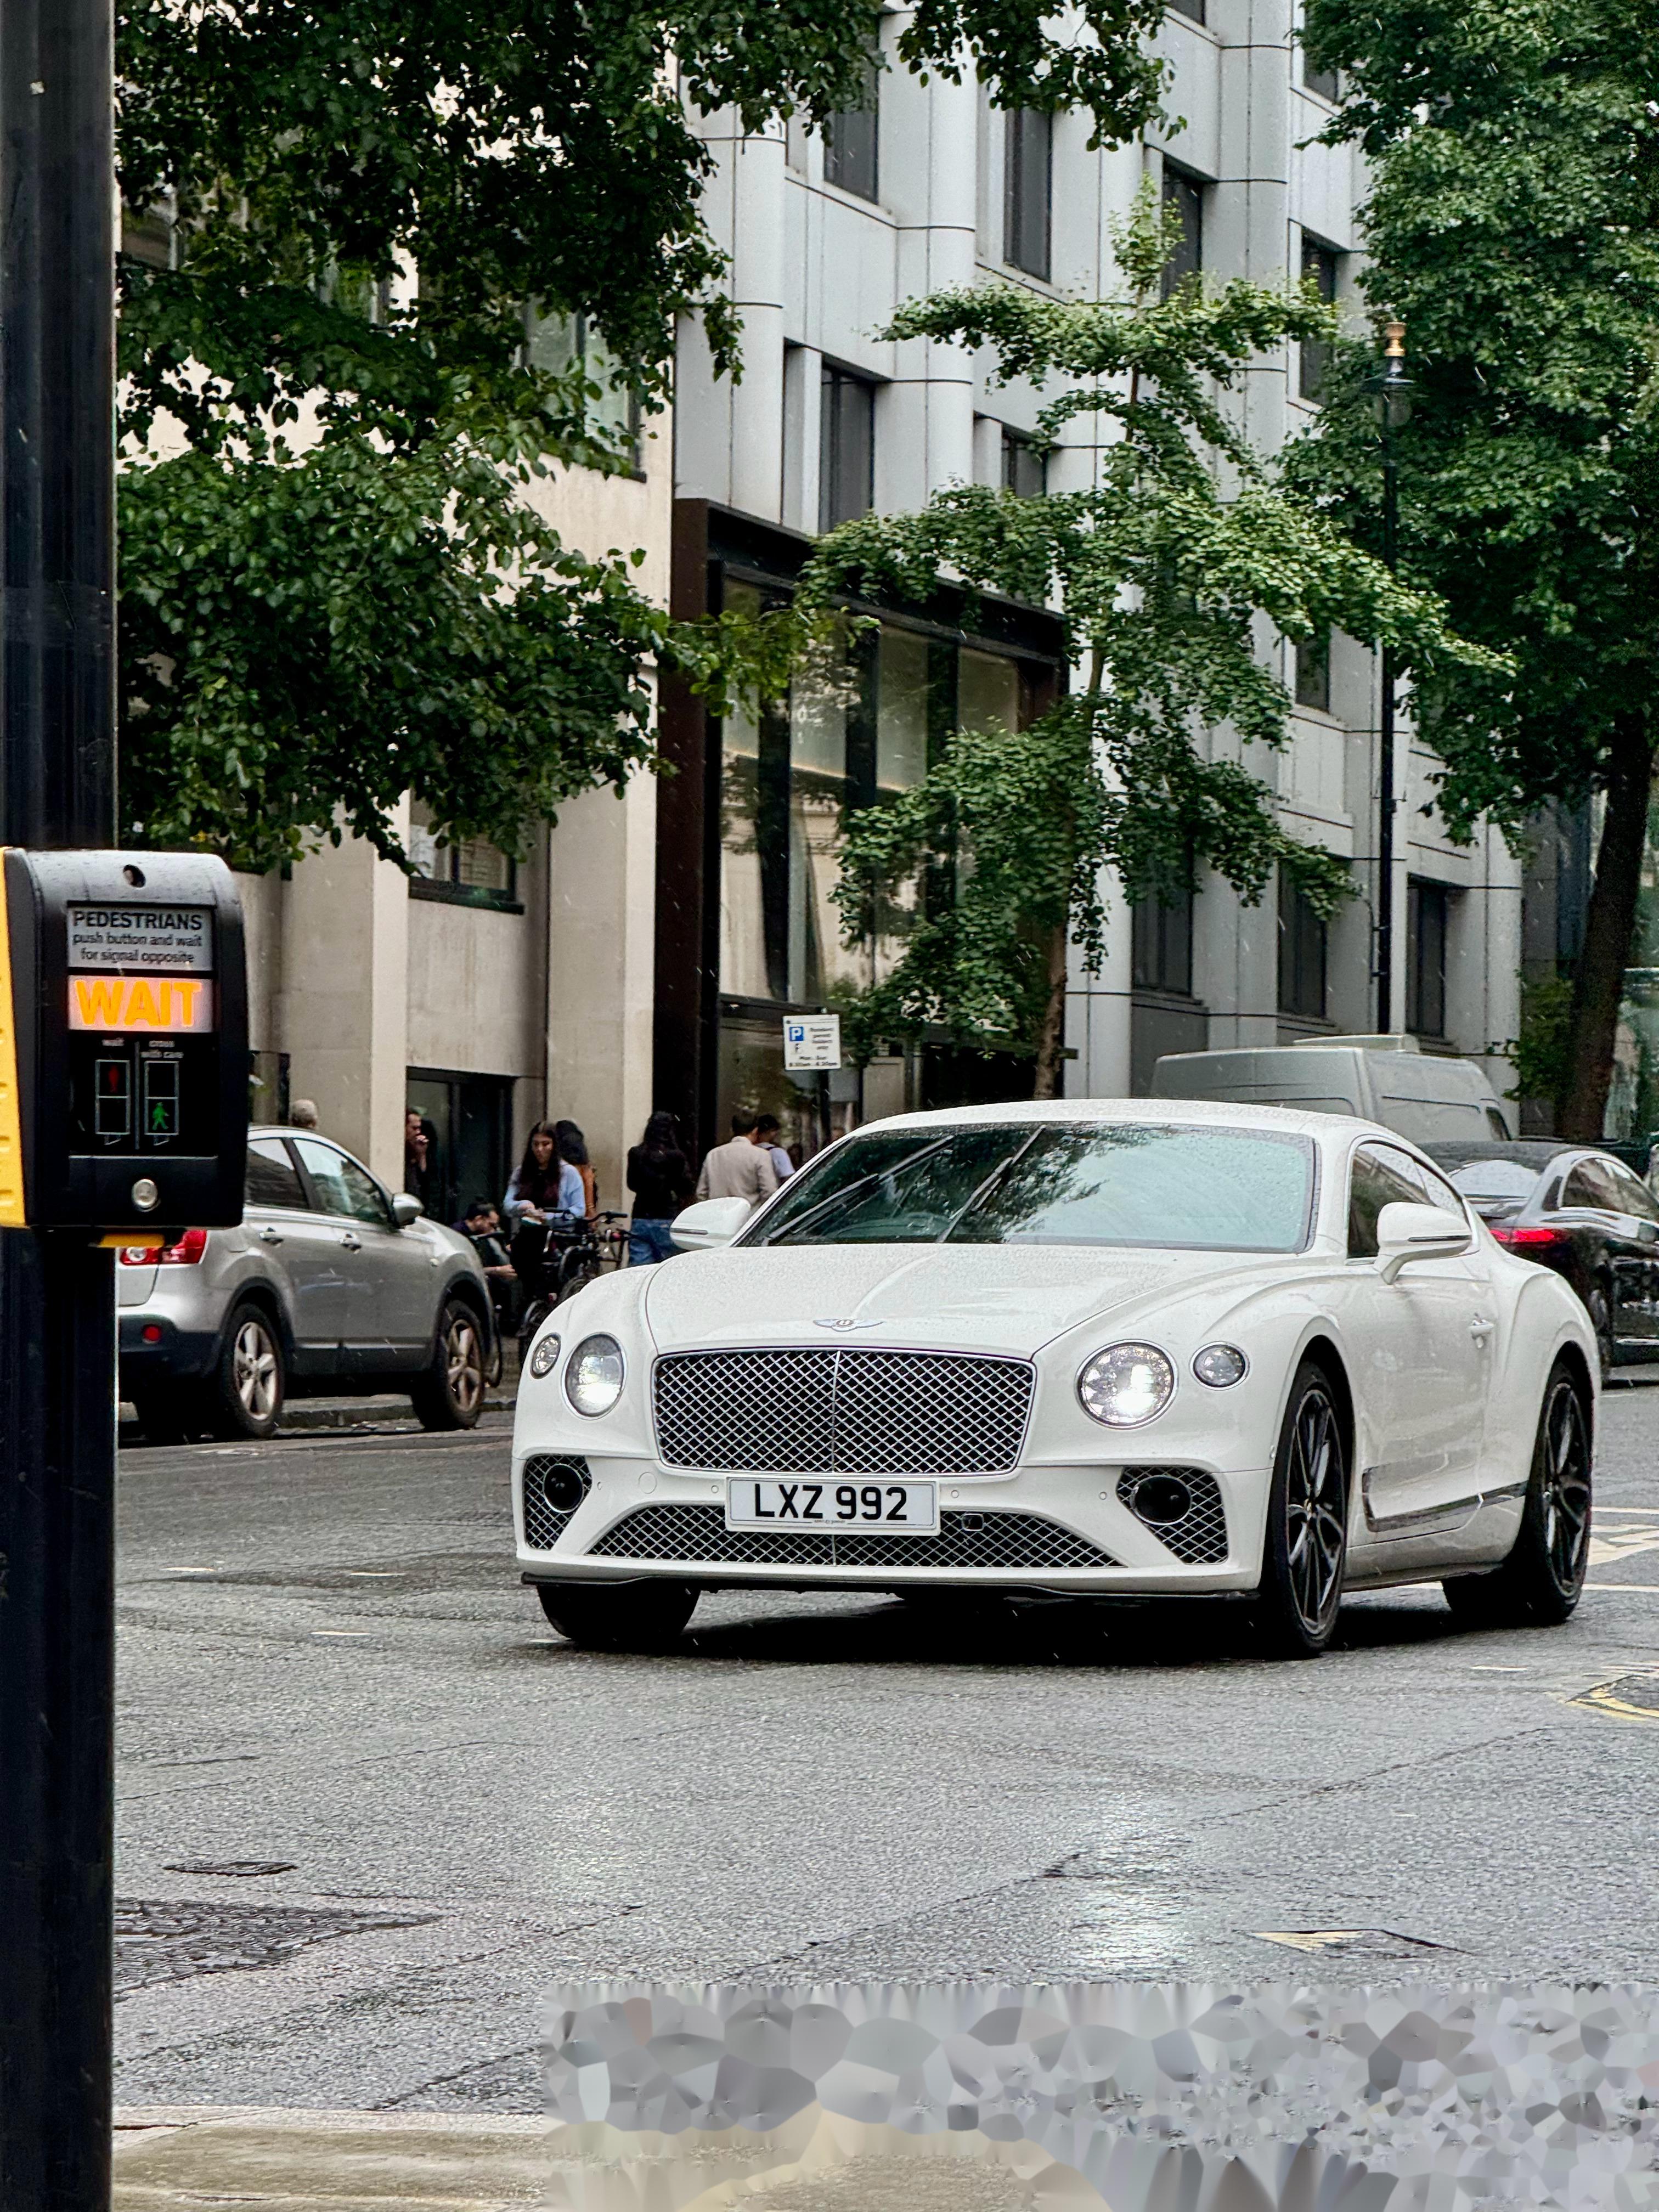 伦敦街头还是得国产车,就是这国产车比较贵街景和车太配了